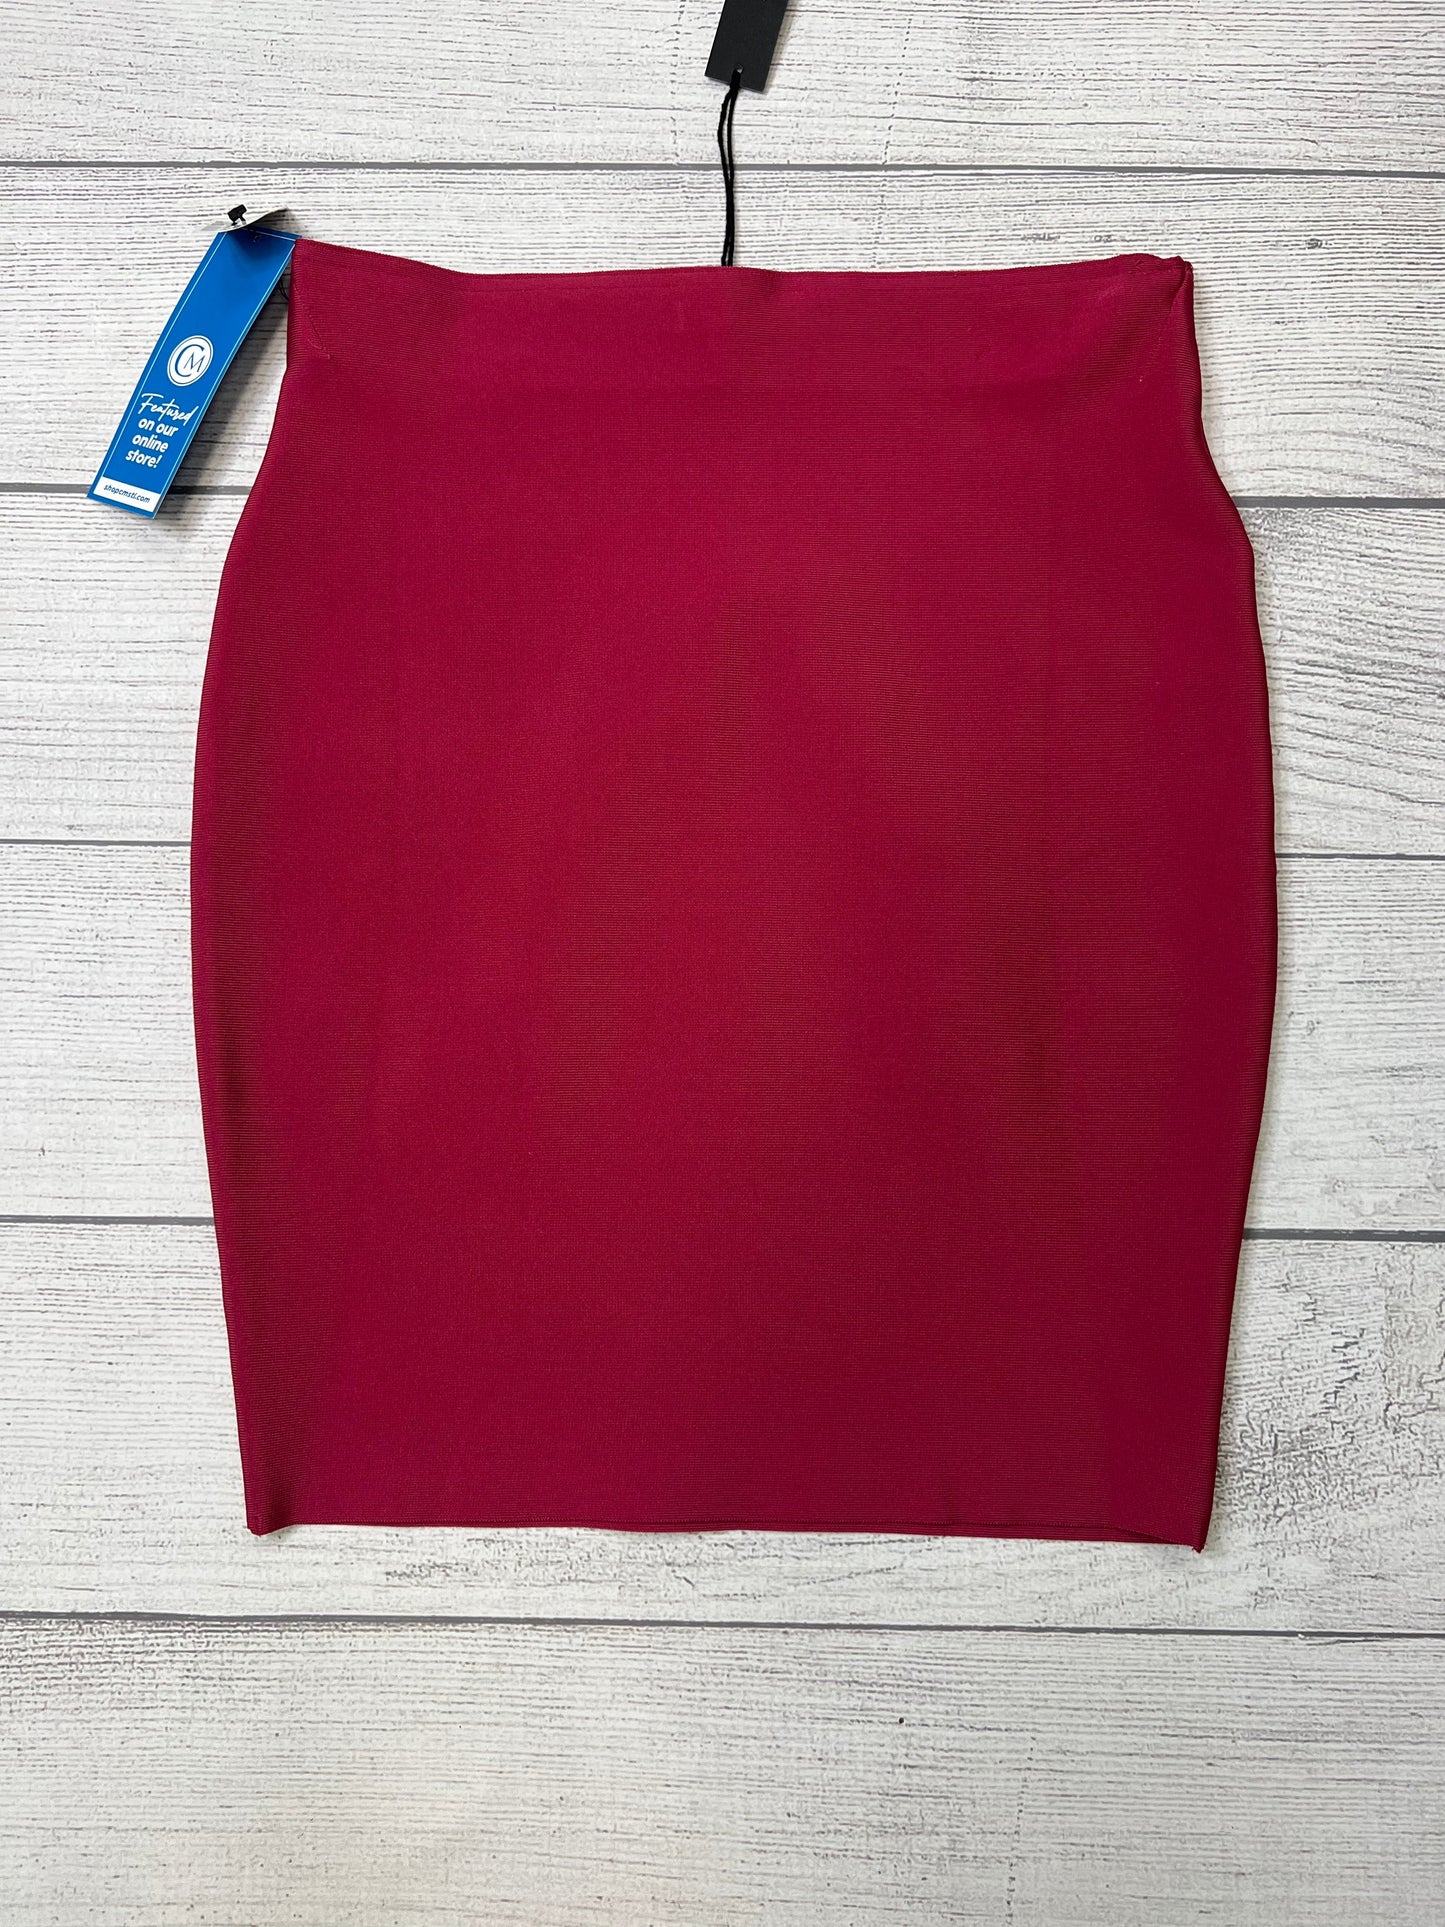 Skirt Midi By Shinestar  Size: 2x